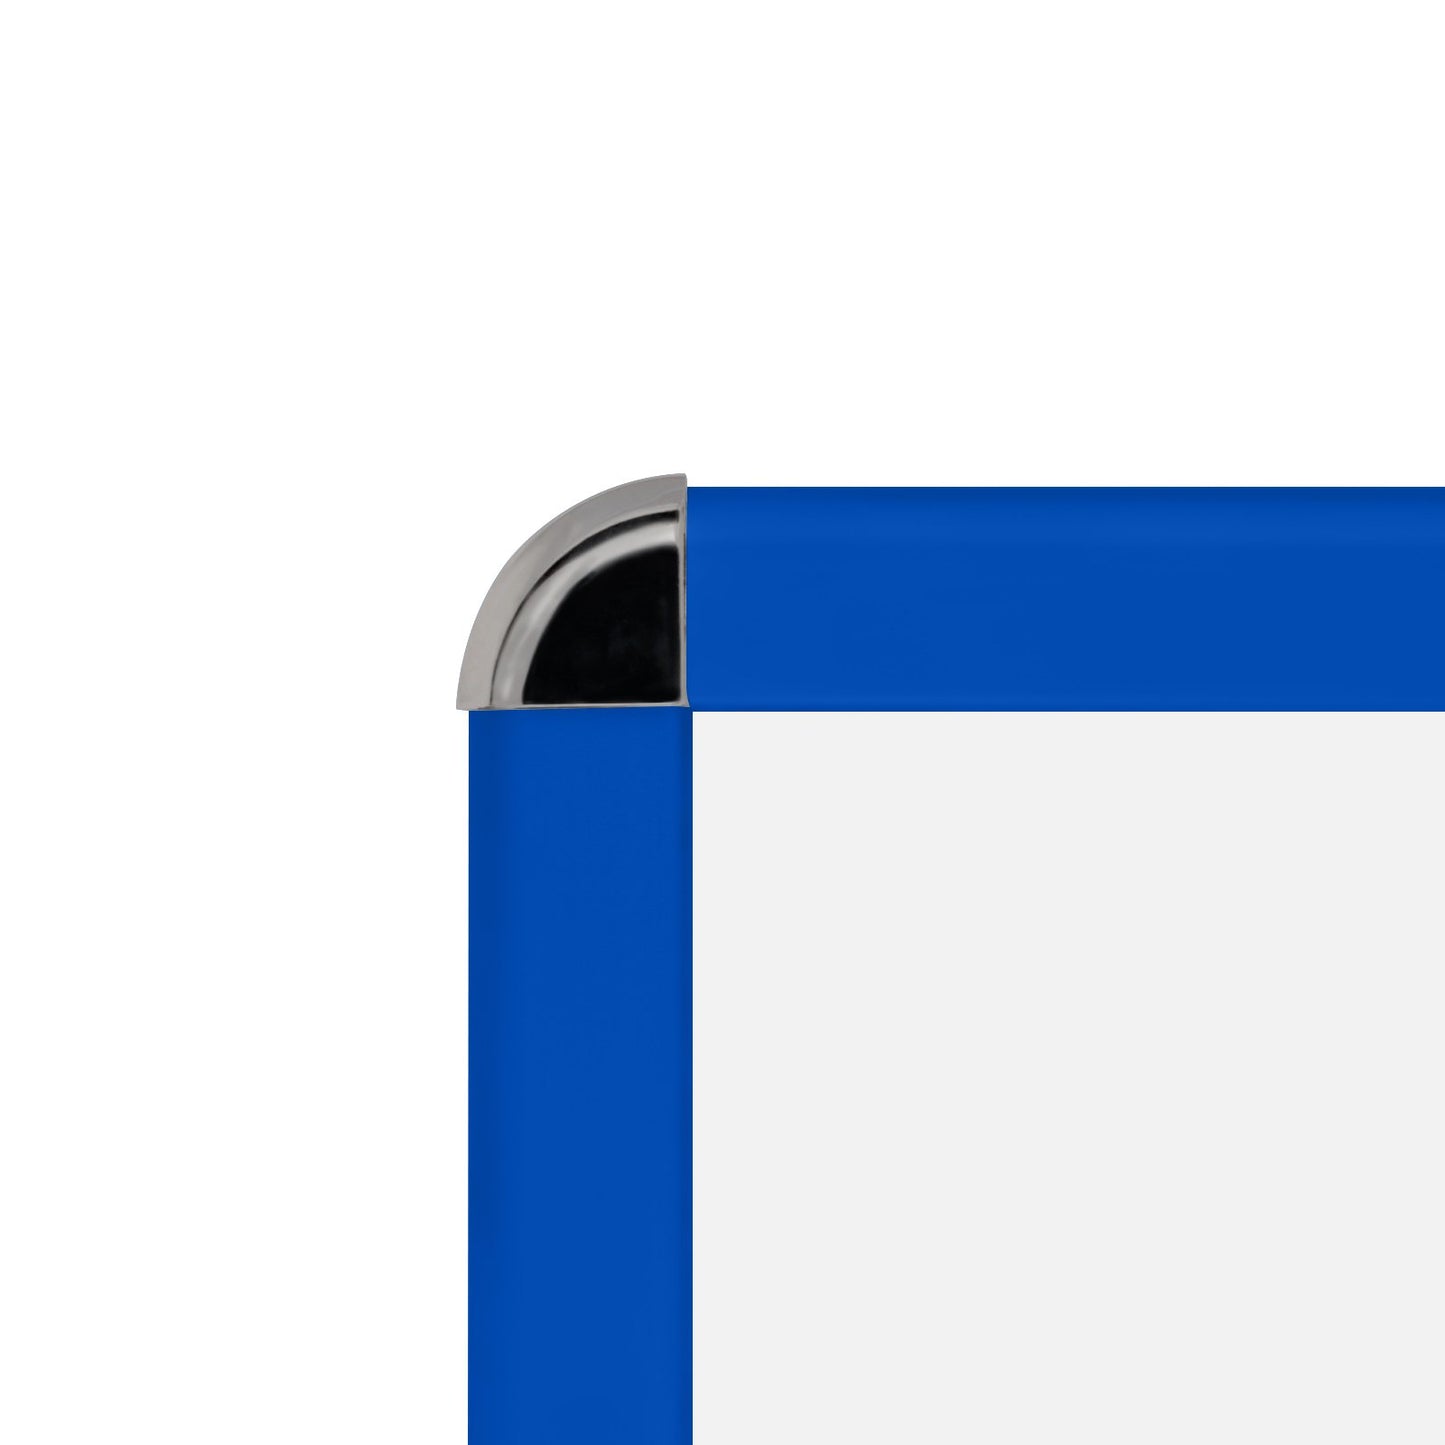 68,58 x 101,60 cm Marco a presión de esquinas redondeadas azul - Perfil de 32 mm